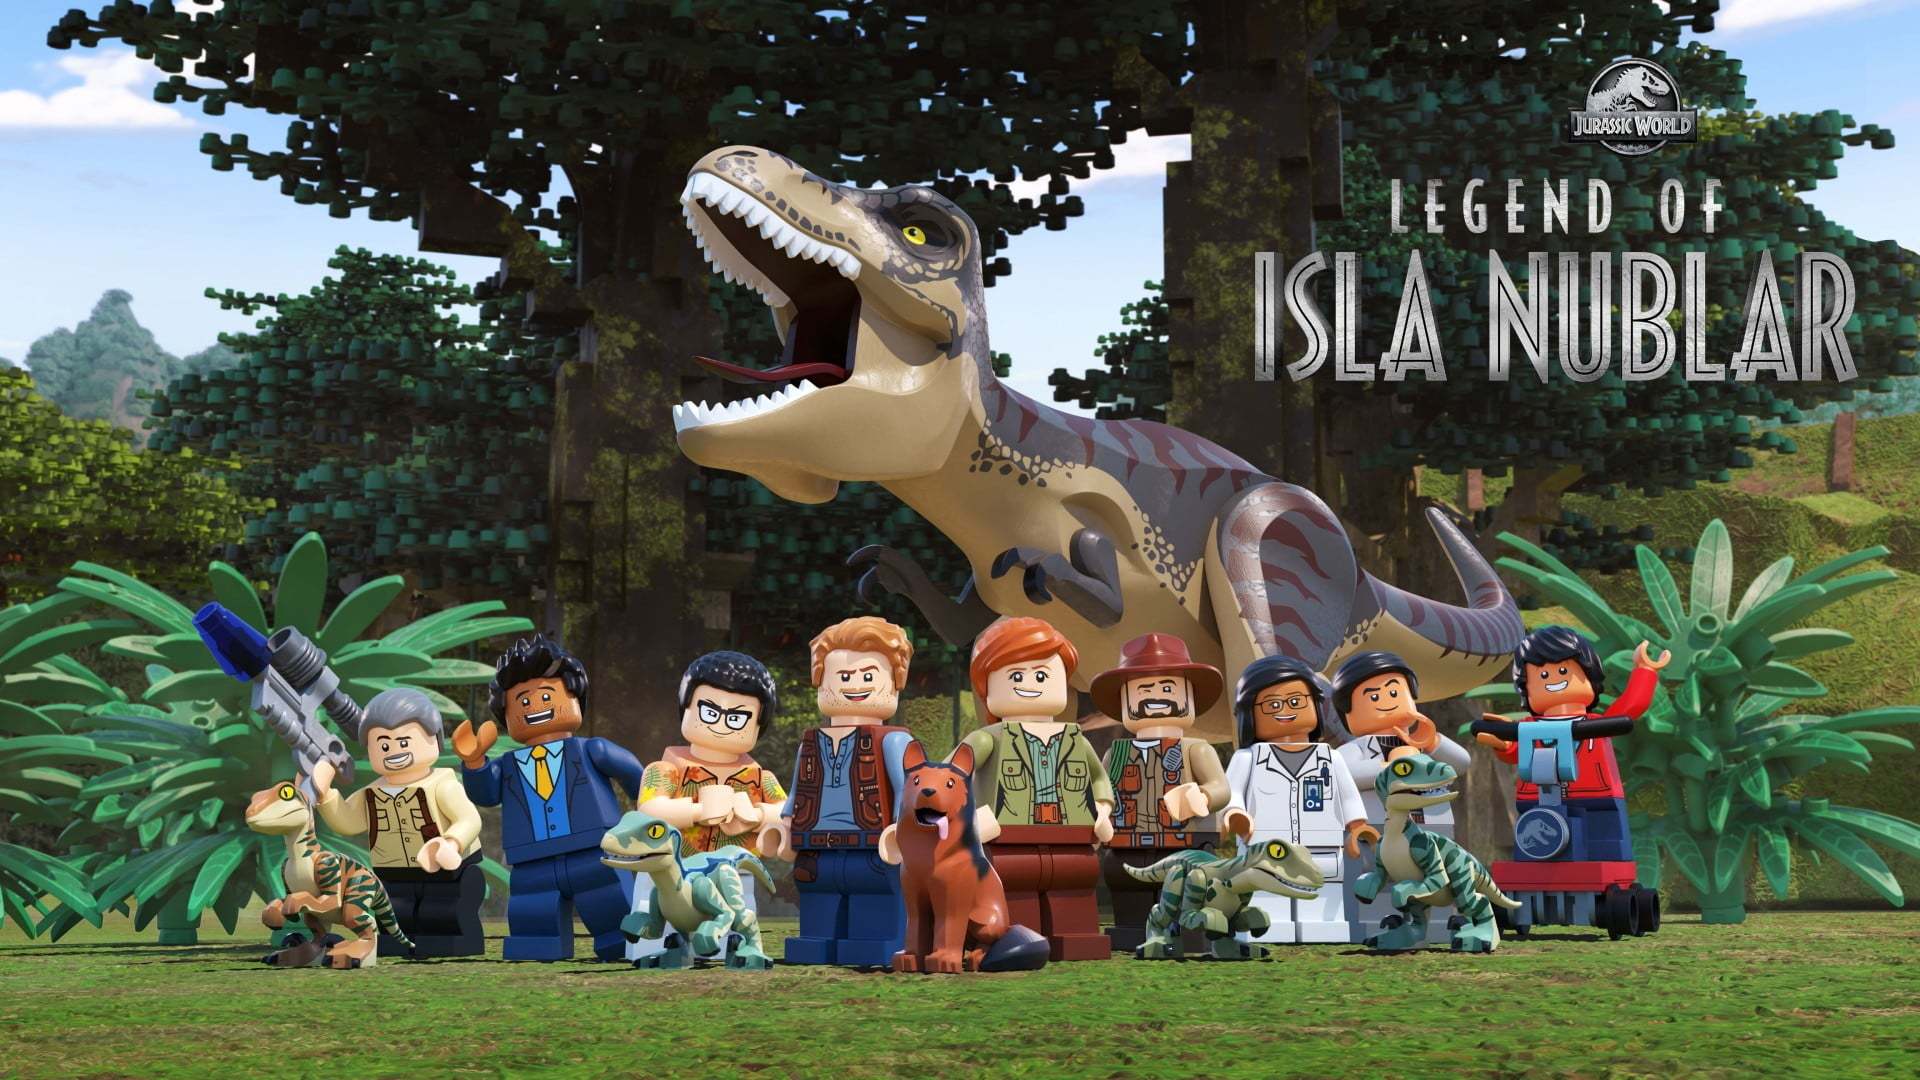 ლეგო იურიული პერიოდის სამყარო: ისლა ნუბლარის ლეგენდა / Lego Jurassic World: Legend of Isla Nublar